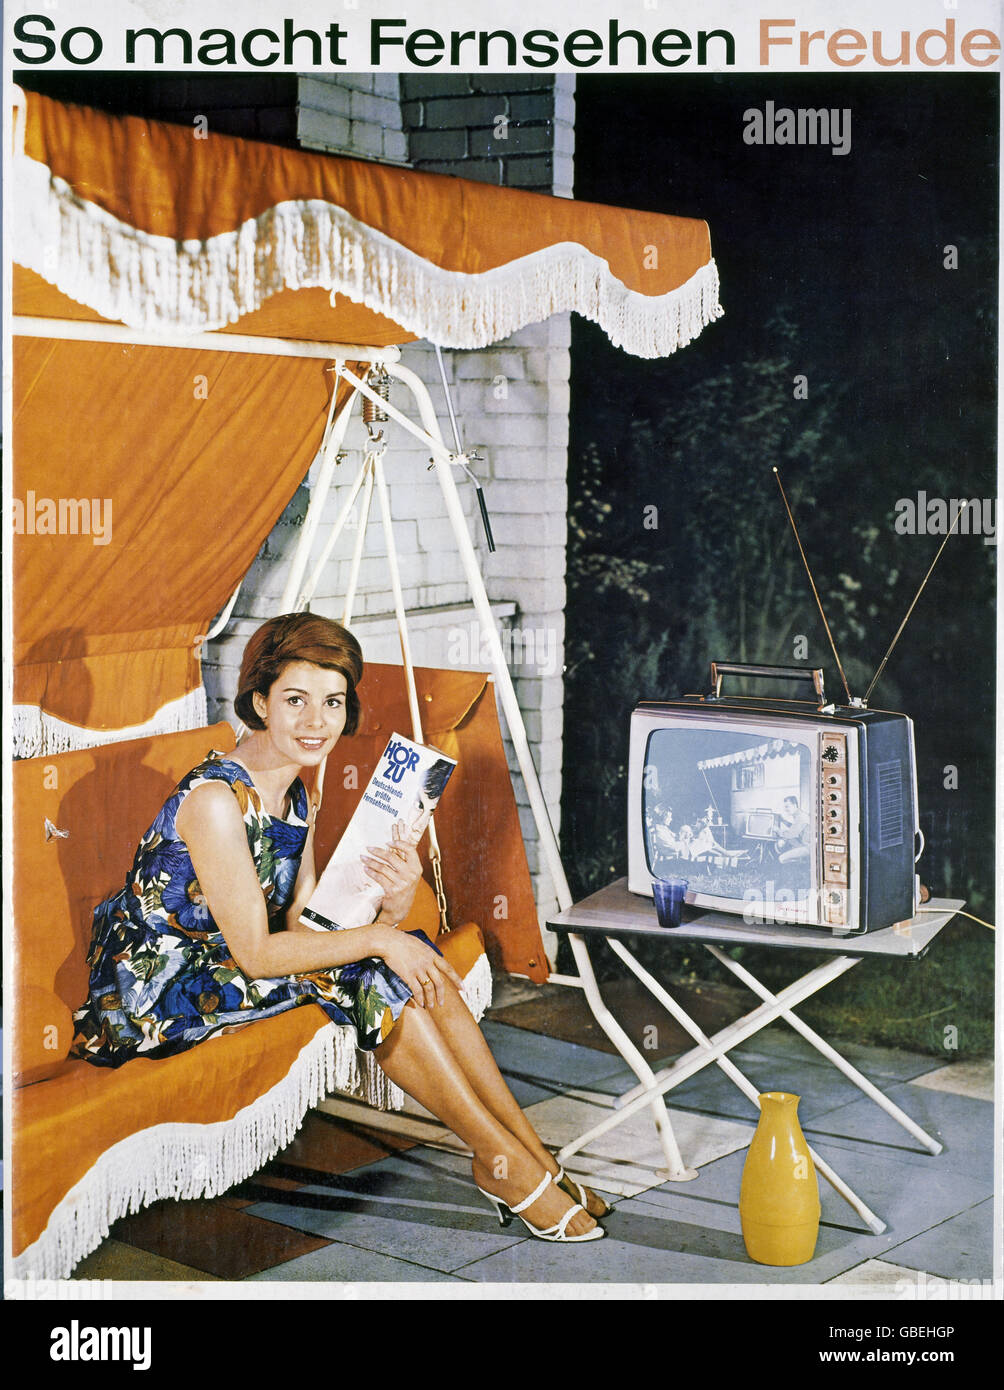 Pubblicità, televisione, pubblicità per Grundig, donna con 'Hoerzu' su un'amaca swing, 1963, Additional-Rights-clearences-not available Foto Stock